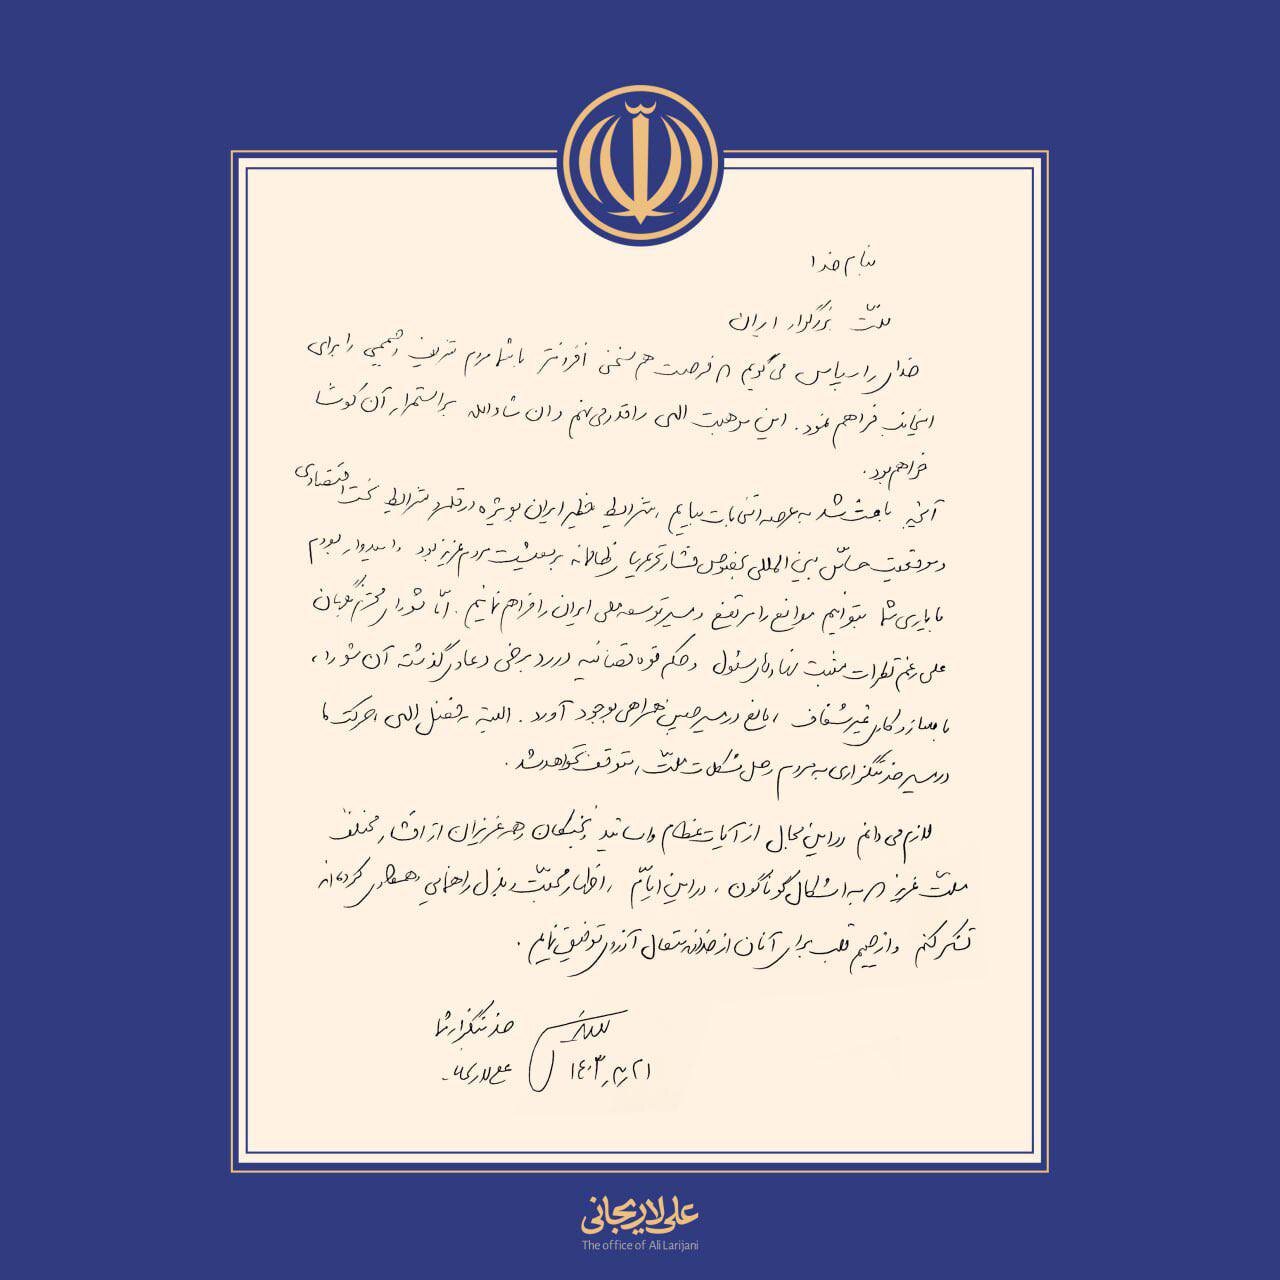 بیانیه مهم علی لاریجانی بعد از ردصلاحیت /شورای نگهبان علی رغم نظر مثبت نهادهای مسئول و حکم قوه قضاییه، در سازوکاری غیرشفاف عمل کرد